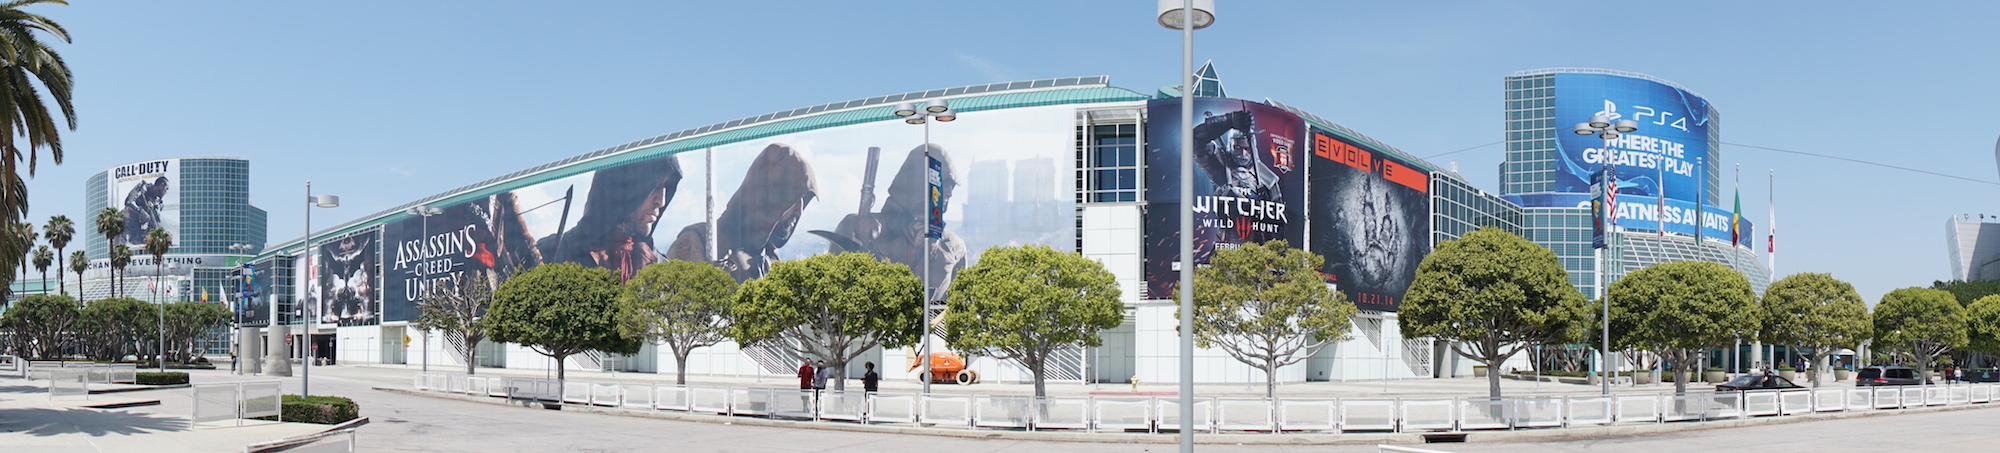 Triển lãm game E3 2014 bắt đầu đêm nay 9.6